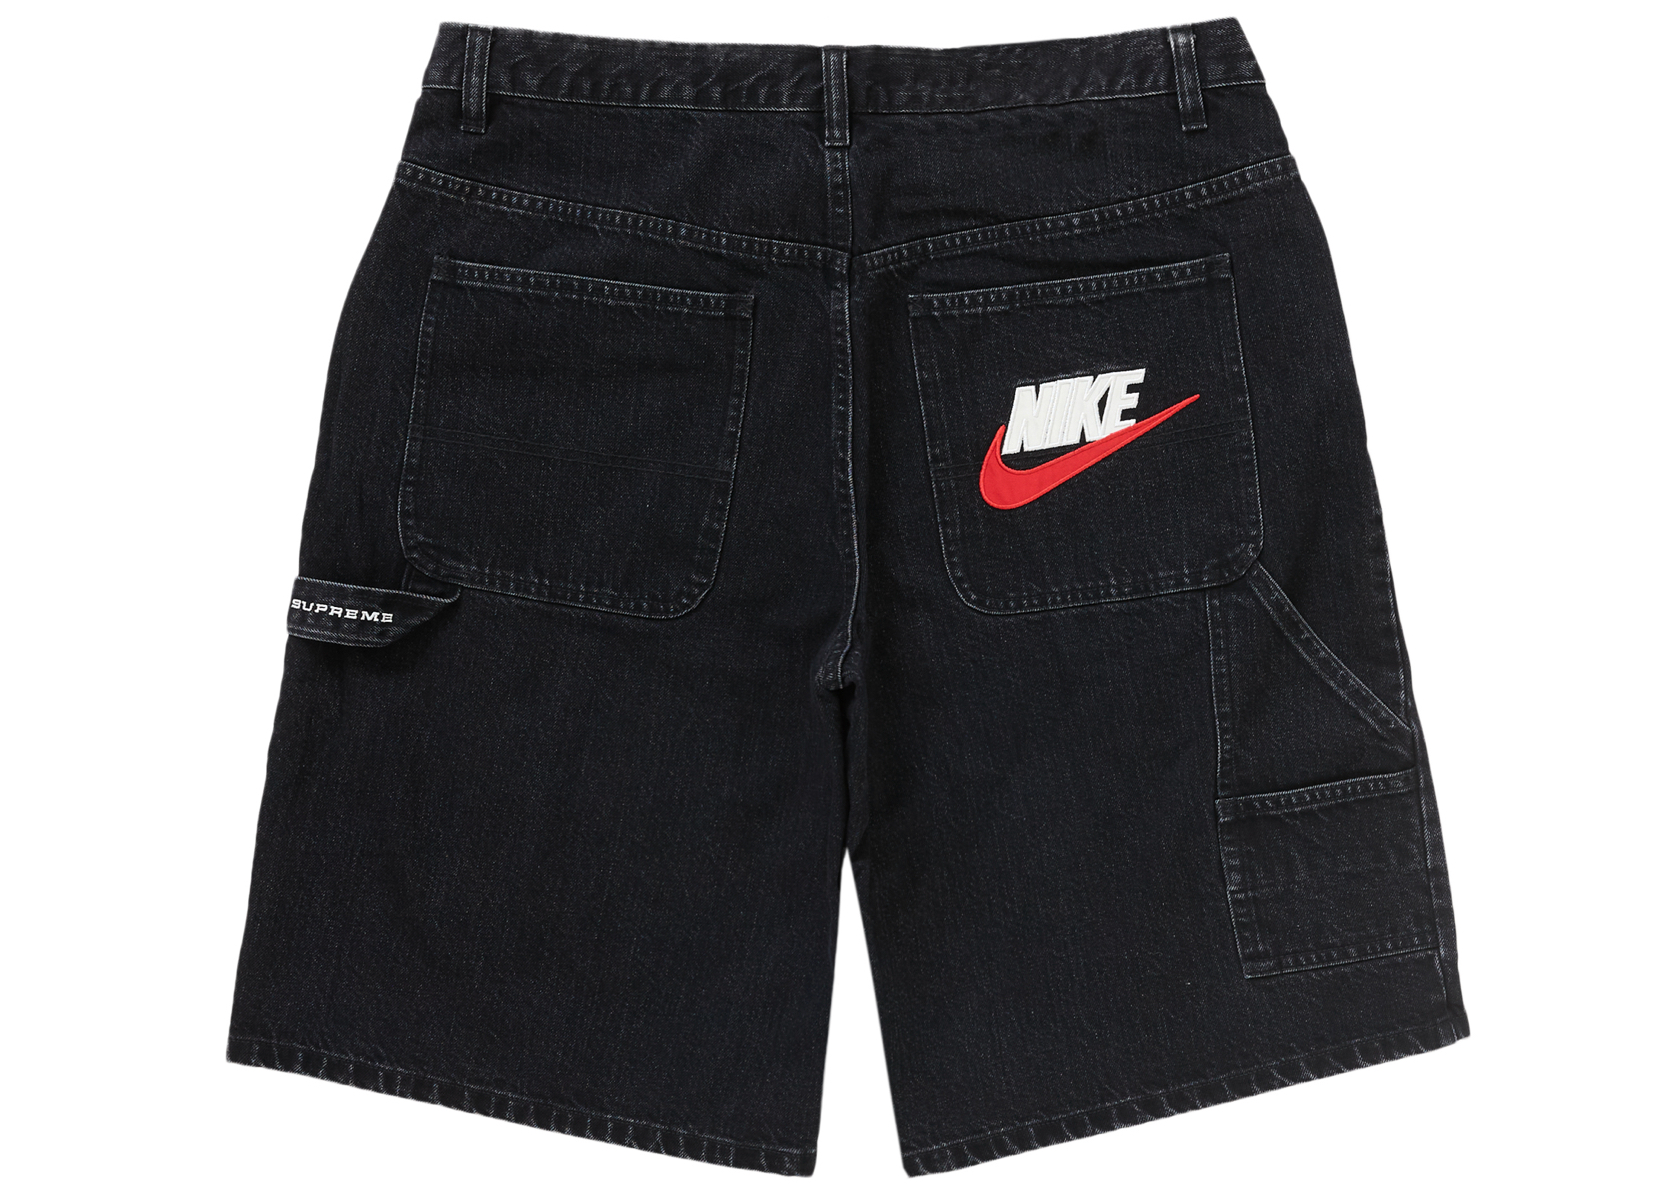 35,999円Supreme x Nike Denim Short